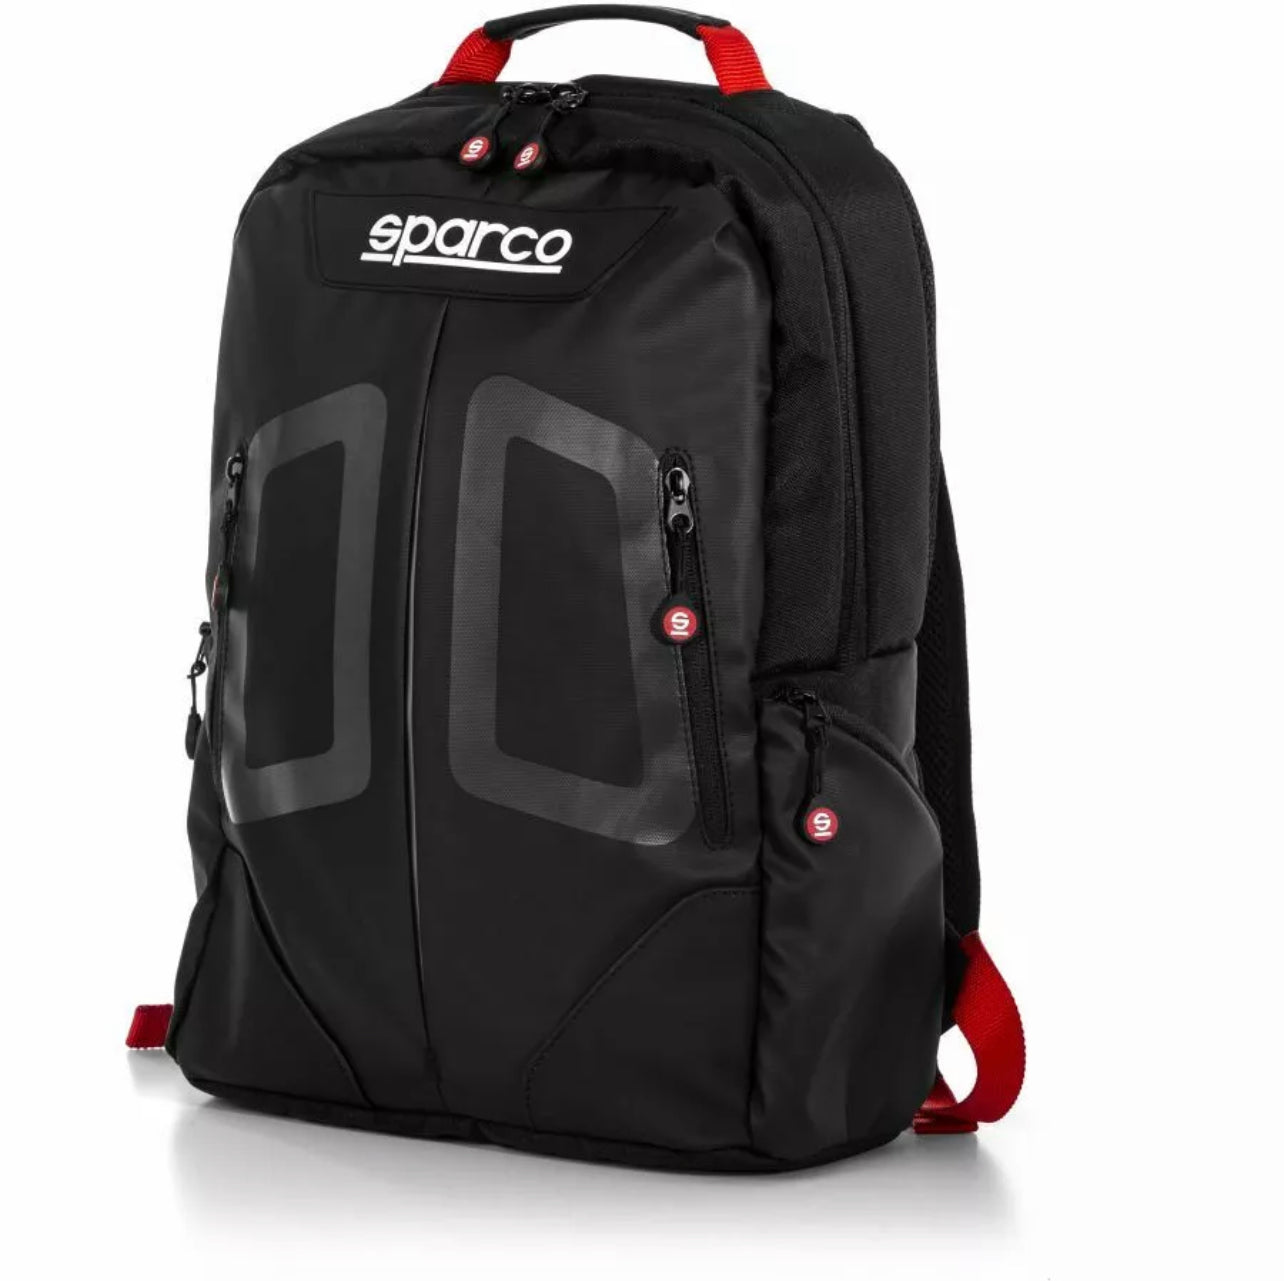 Zaino Sparco Motorsport Stage Nero/Rosso Capacità 15L per laptop da 15"Perfetto anche per la scuola!!